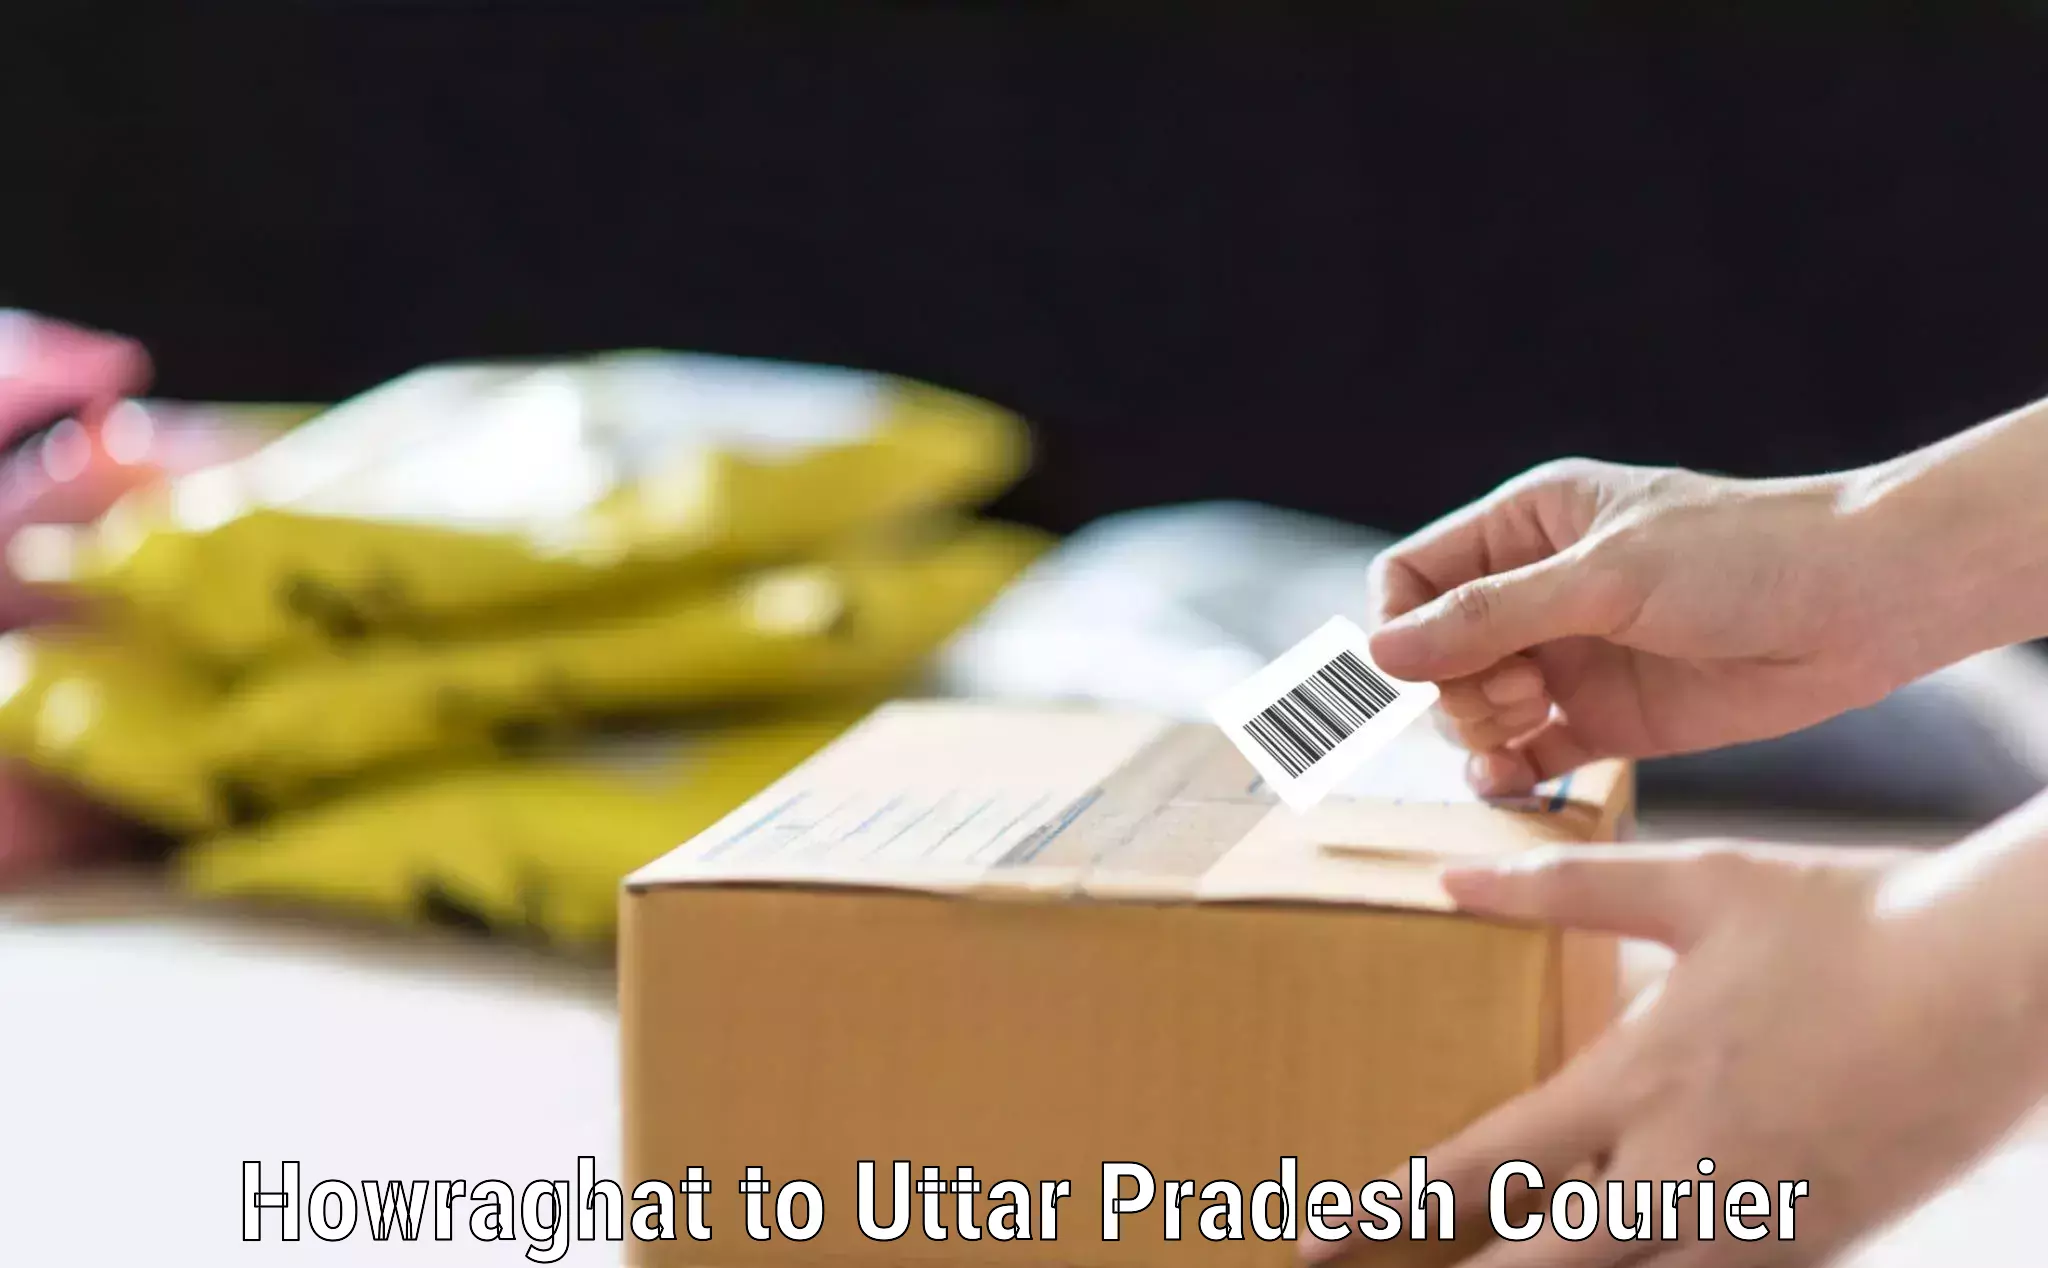 Digital baggage courier Howraghat to Uttar Pradesh